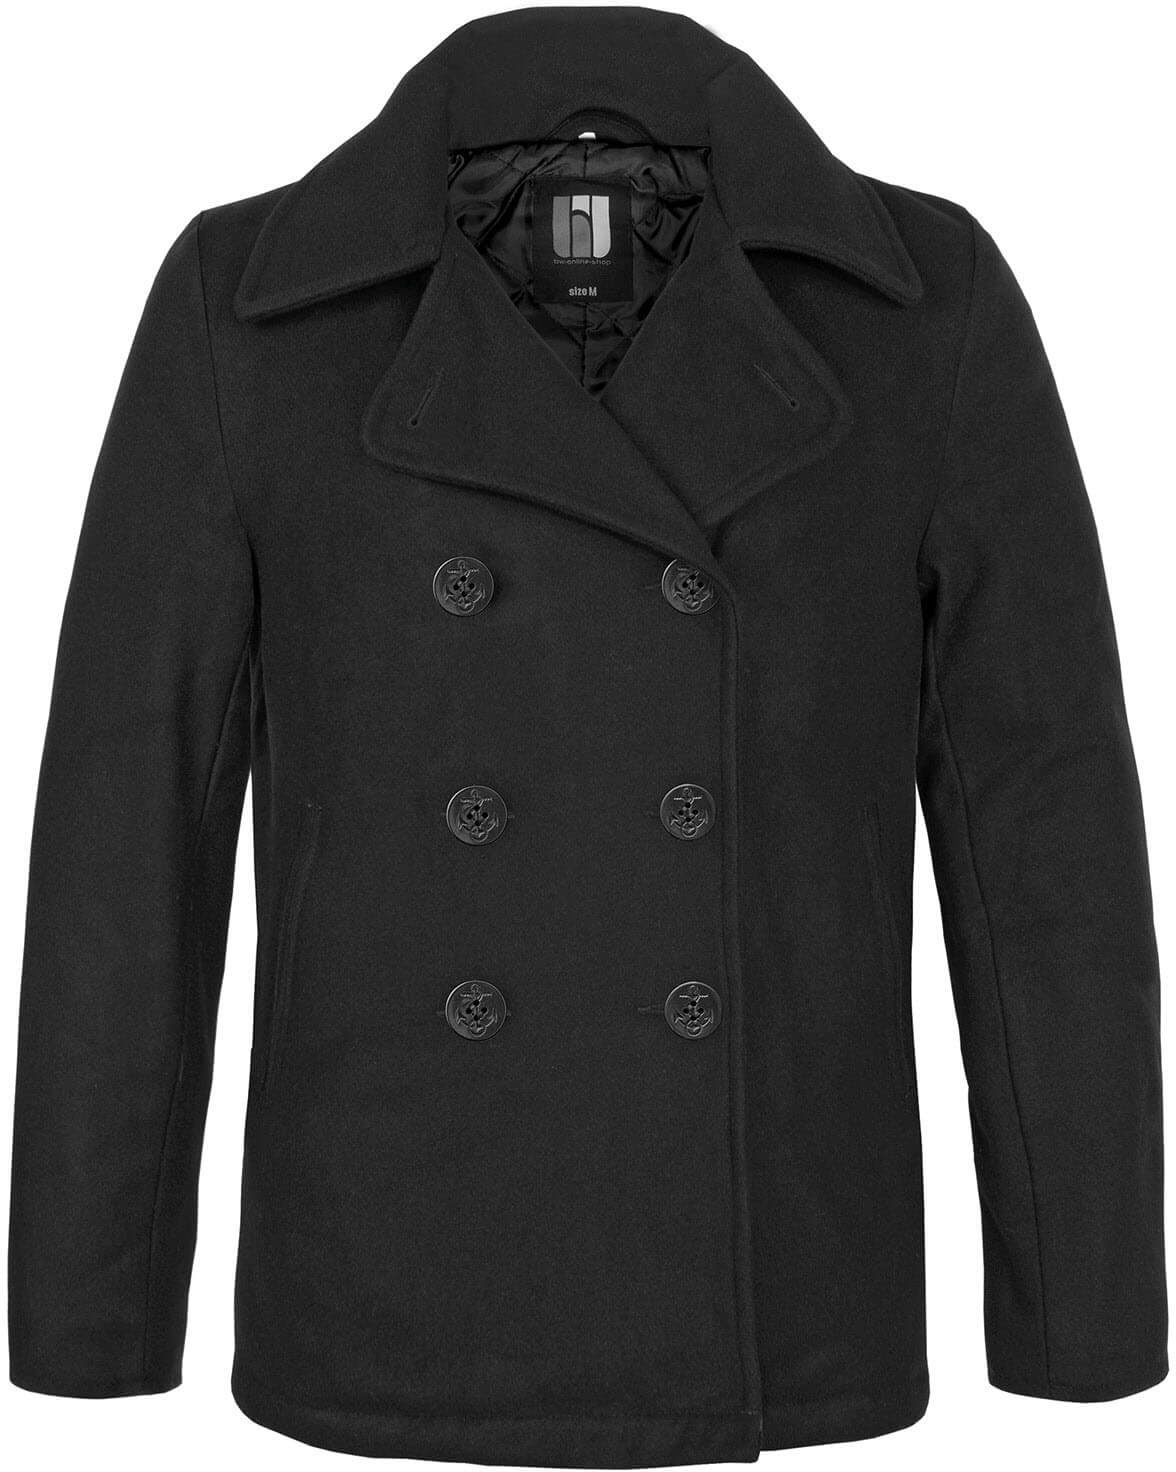 bw-online-shop Navy Pea Coat Mantel schwarz, Größe M